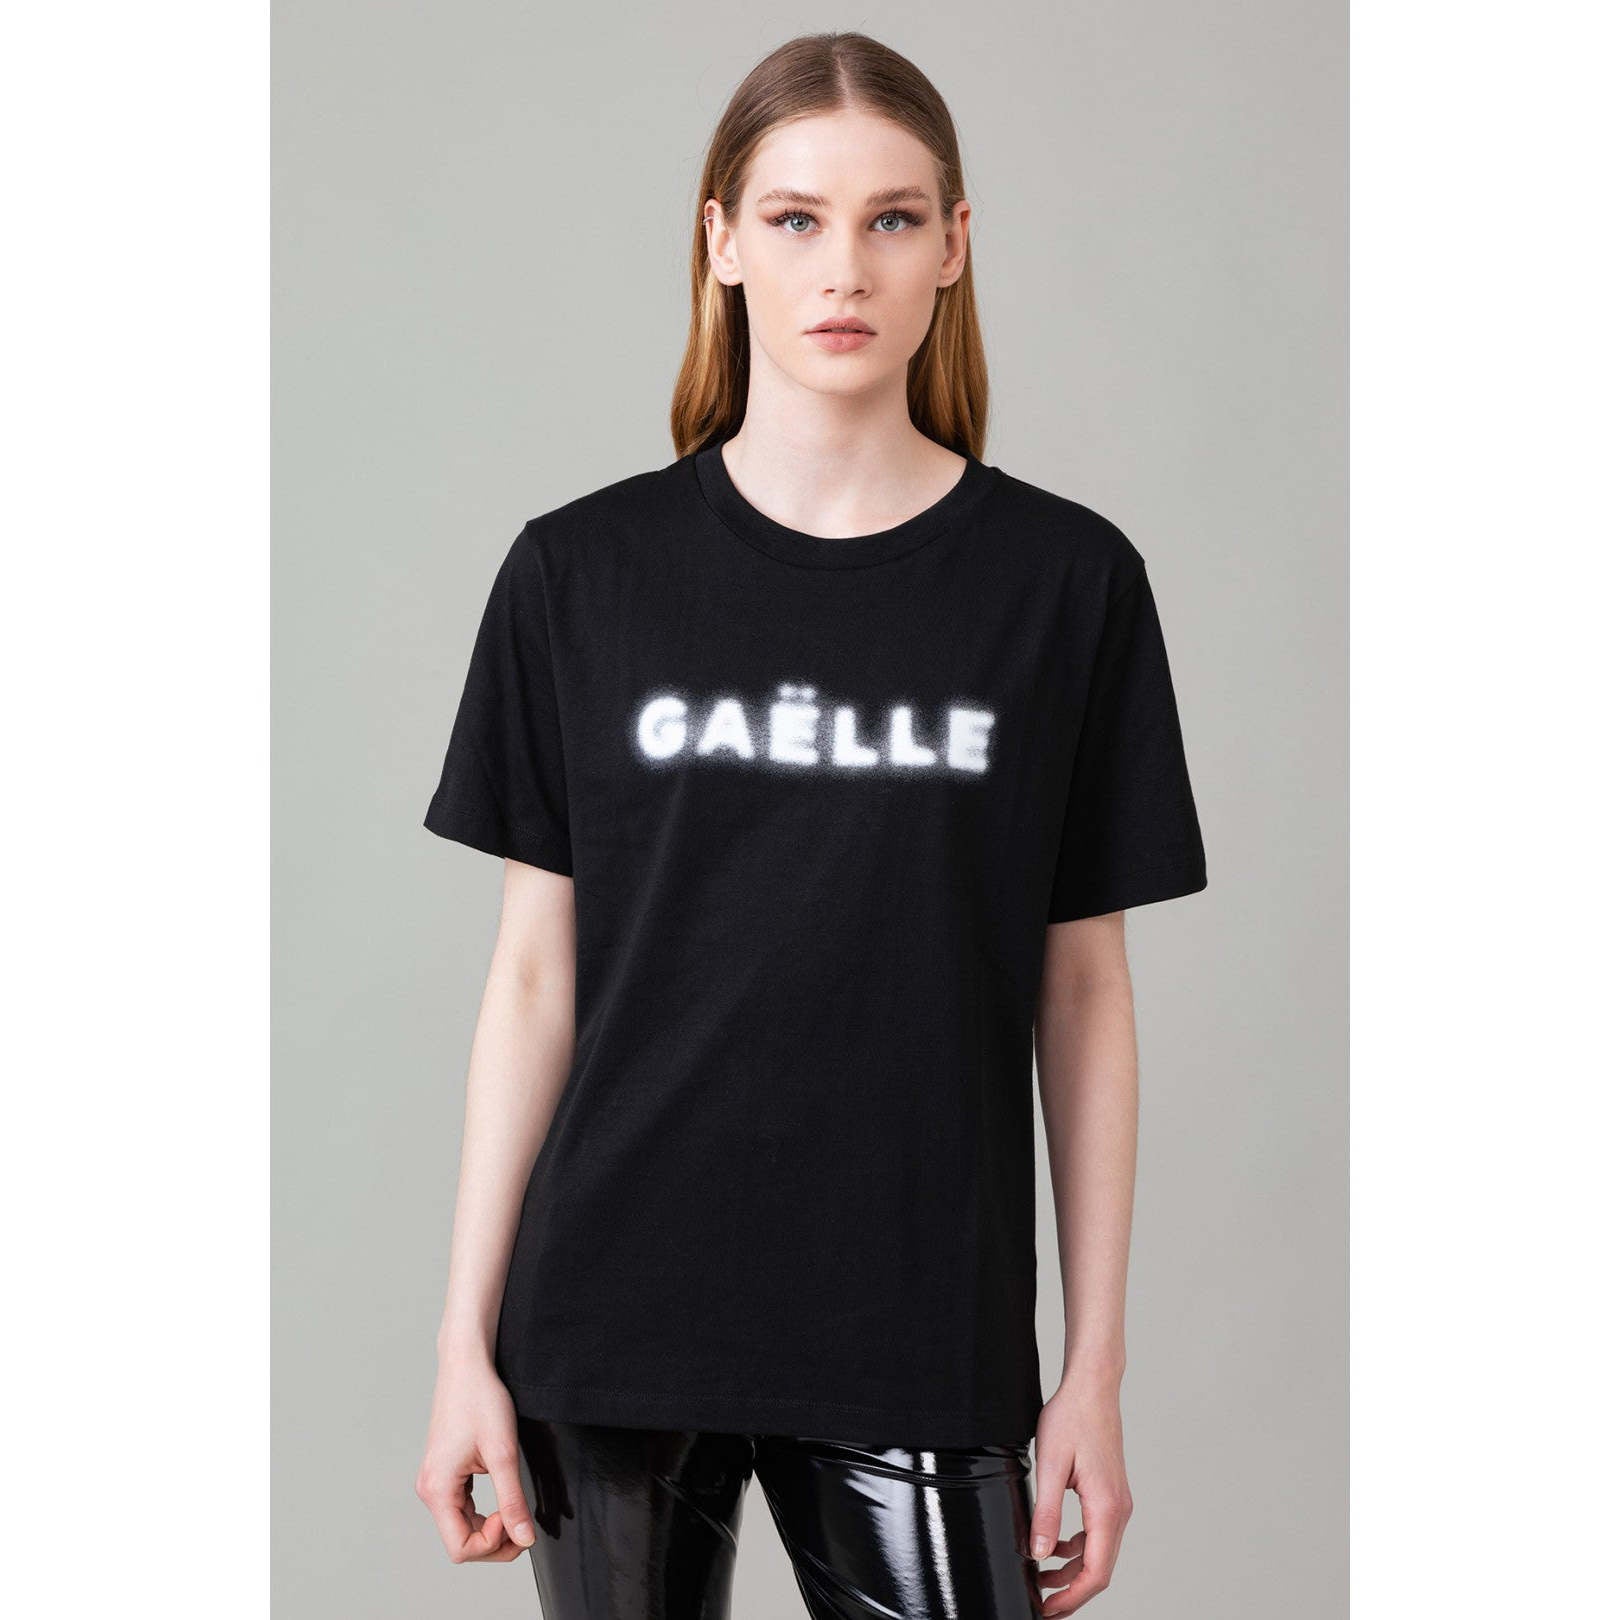 Gaelle Donna T-shirt GBDP13928